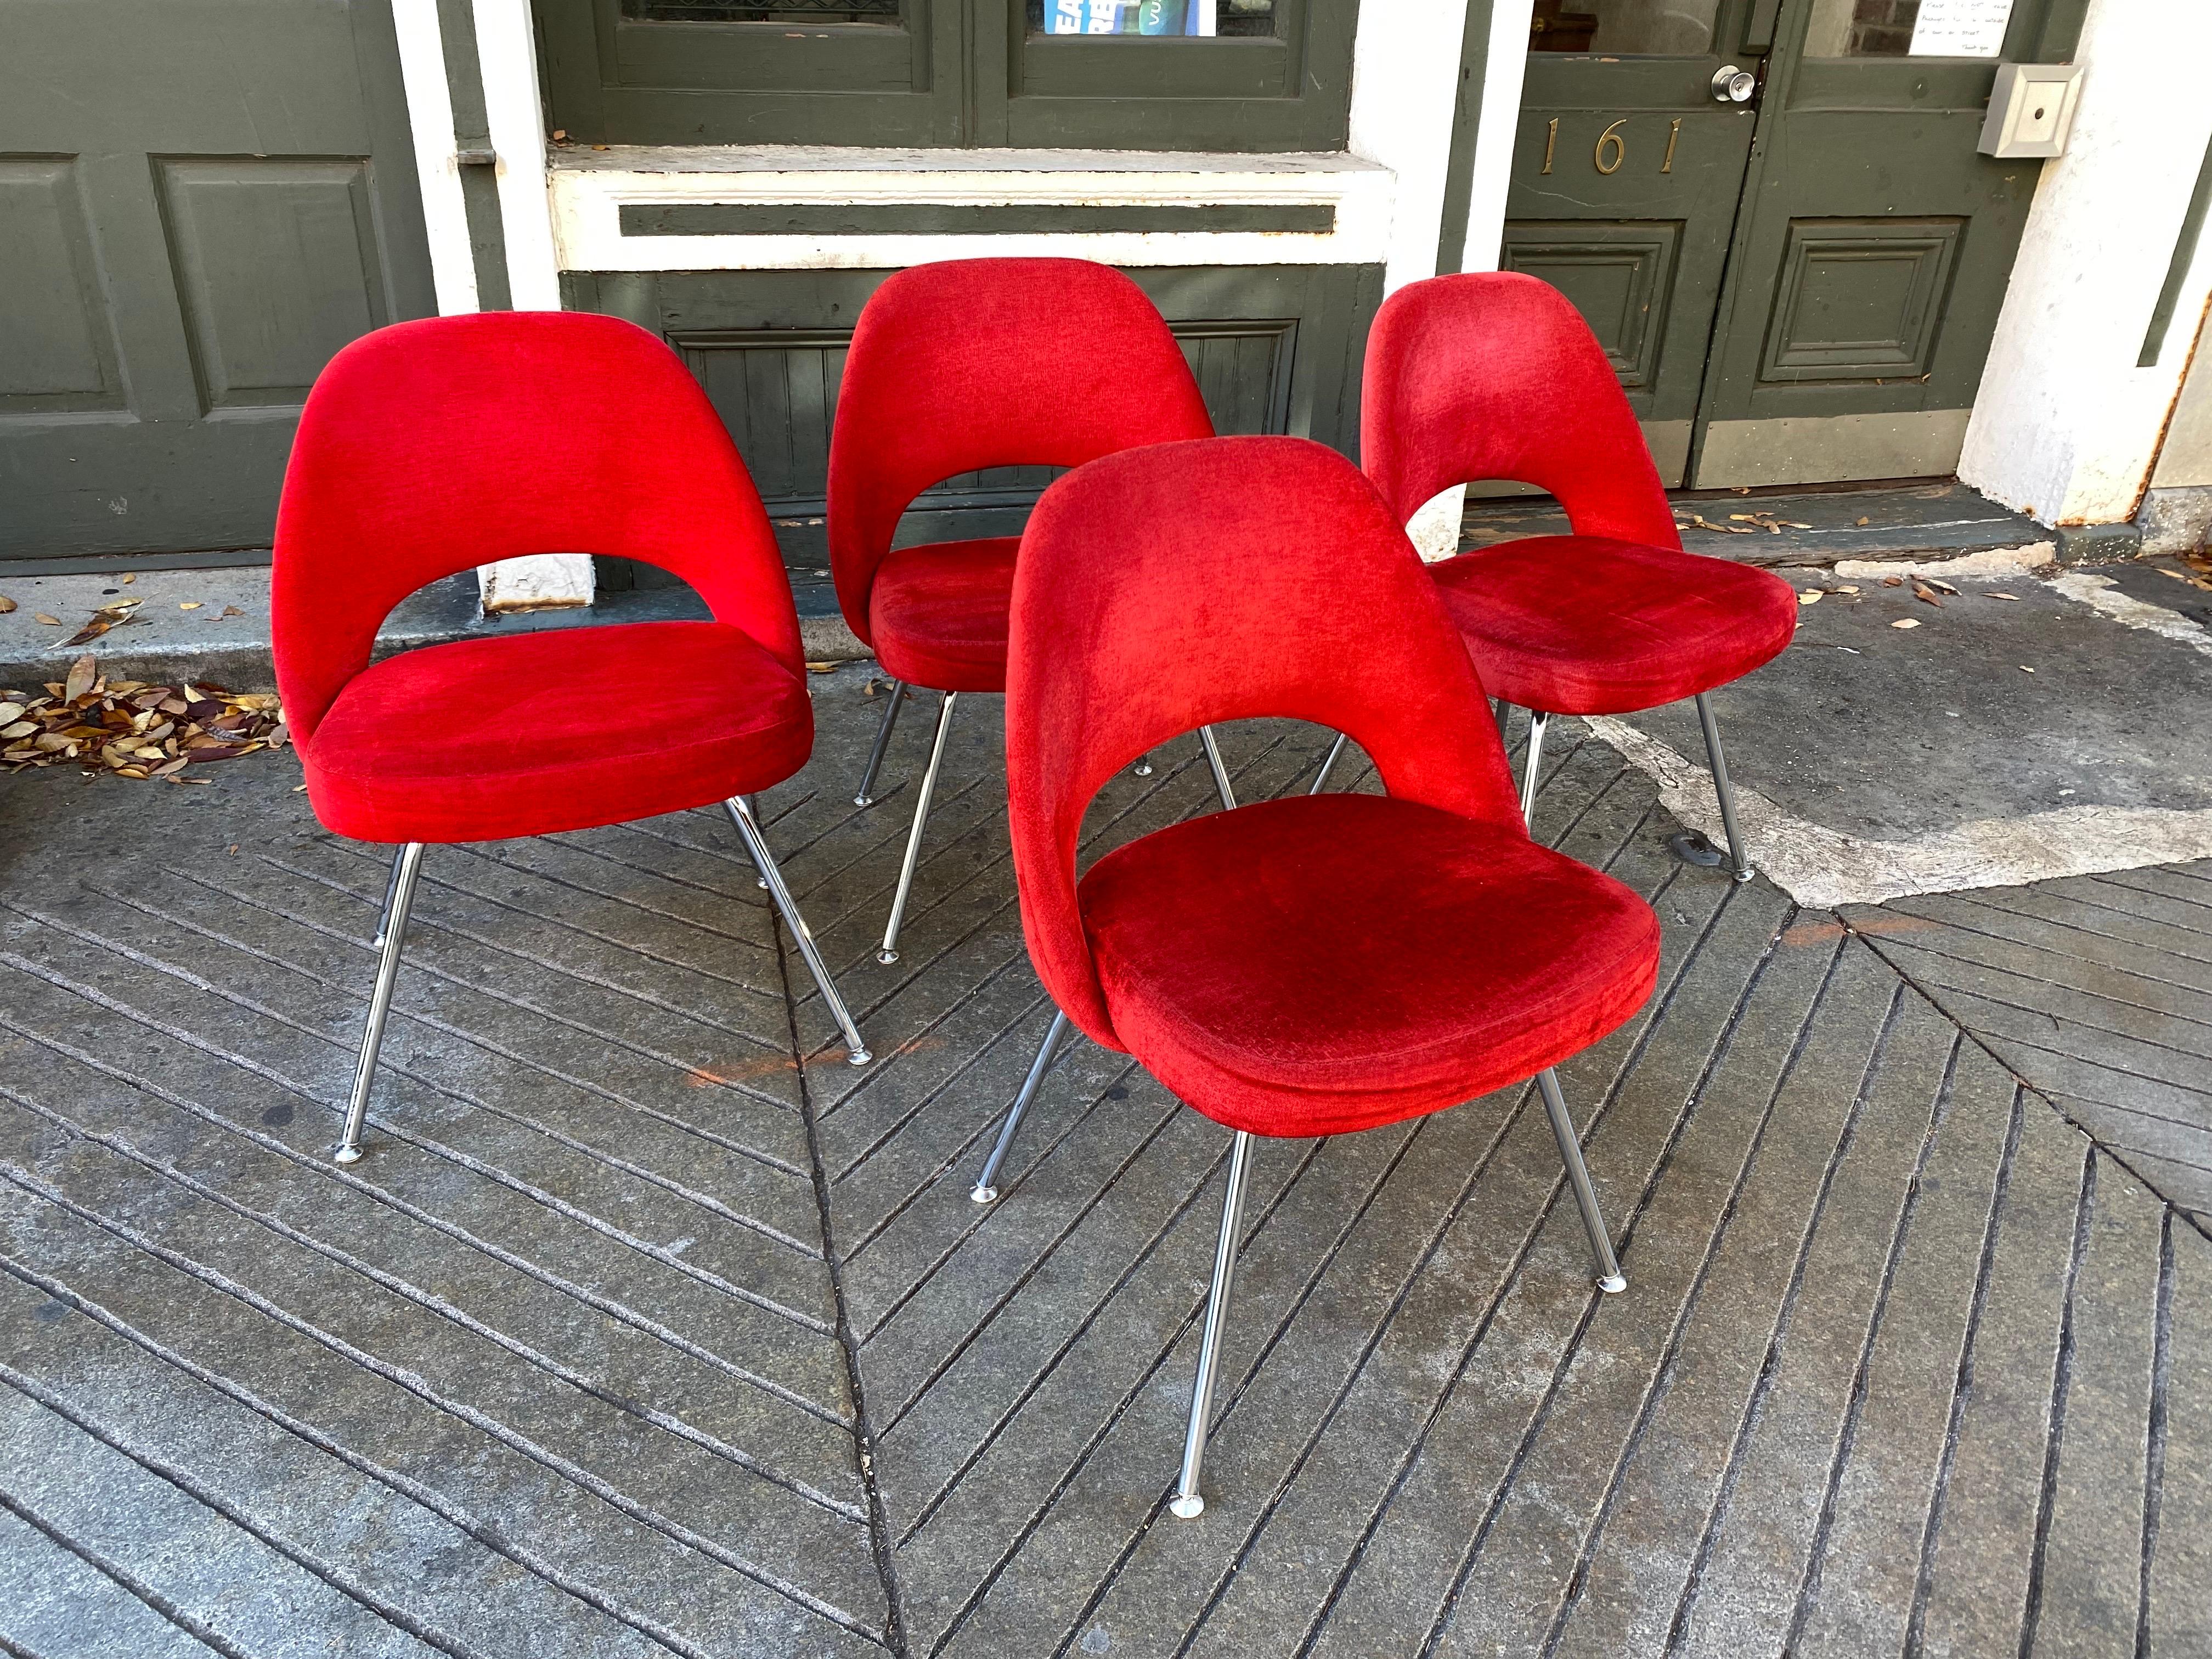 Ensemble de 8 chaises de salle à manger Eero Saarinen pour Knoll. Cette série date de 2009.  Matériel en velours rouge en très bon état !  Le chrome est également propre !  Chaise prête à l'emploi !  L'une des chaises les plus confortables qui